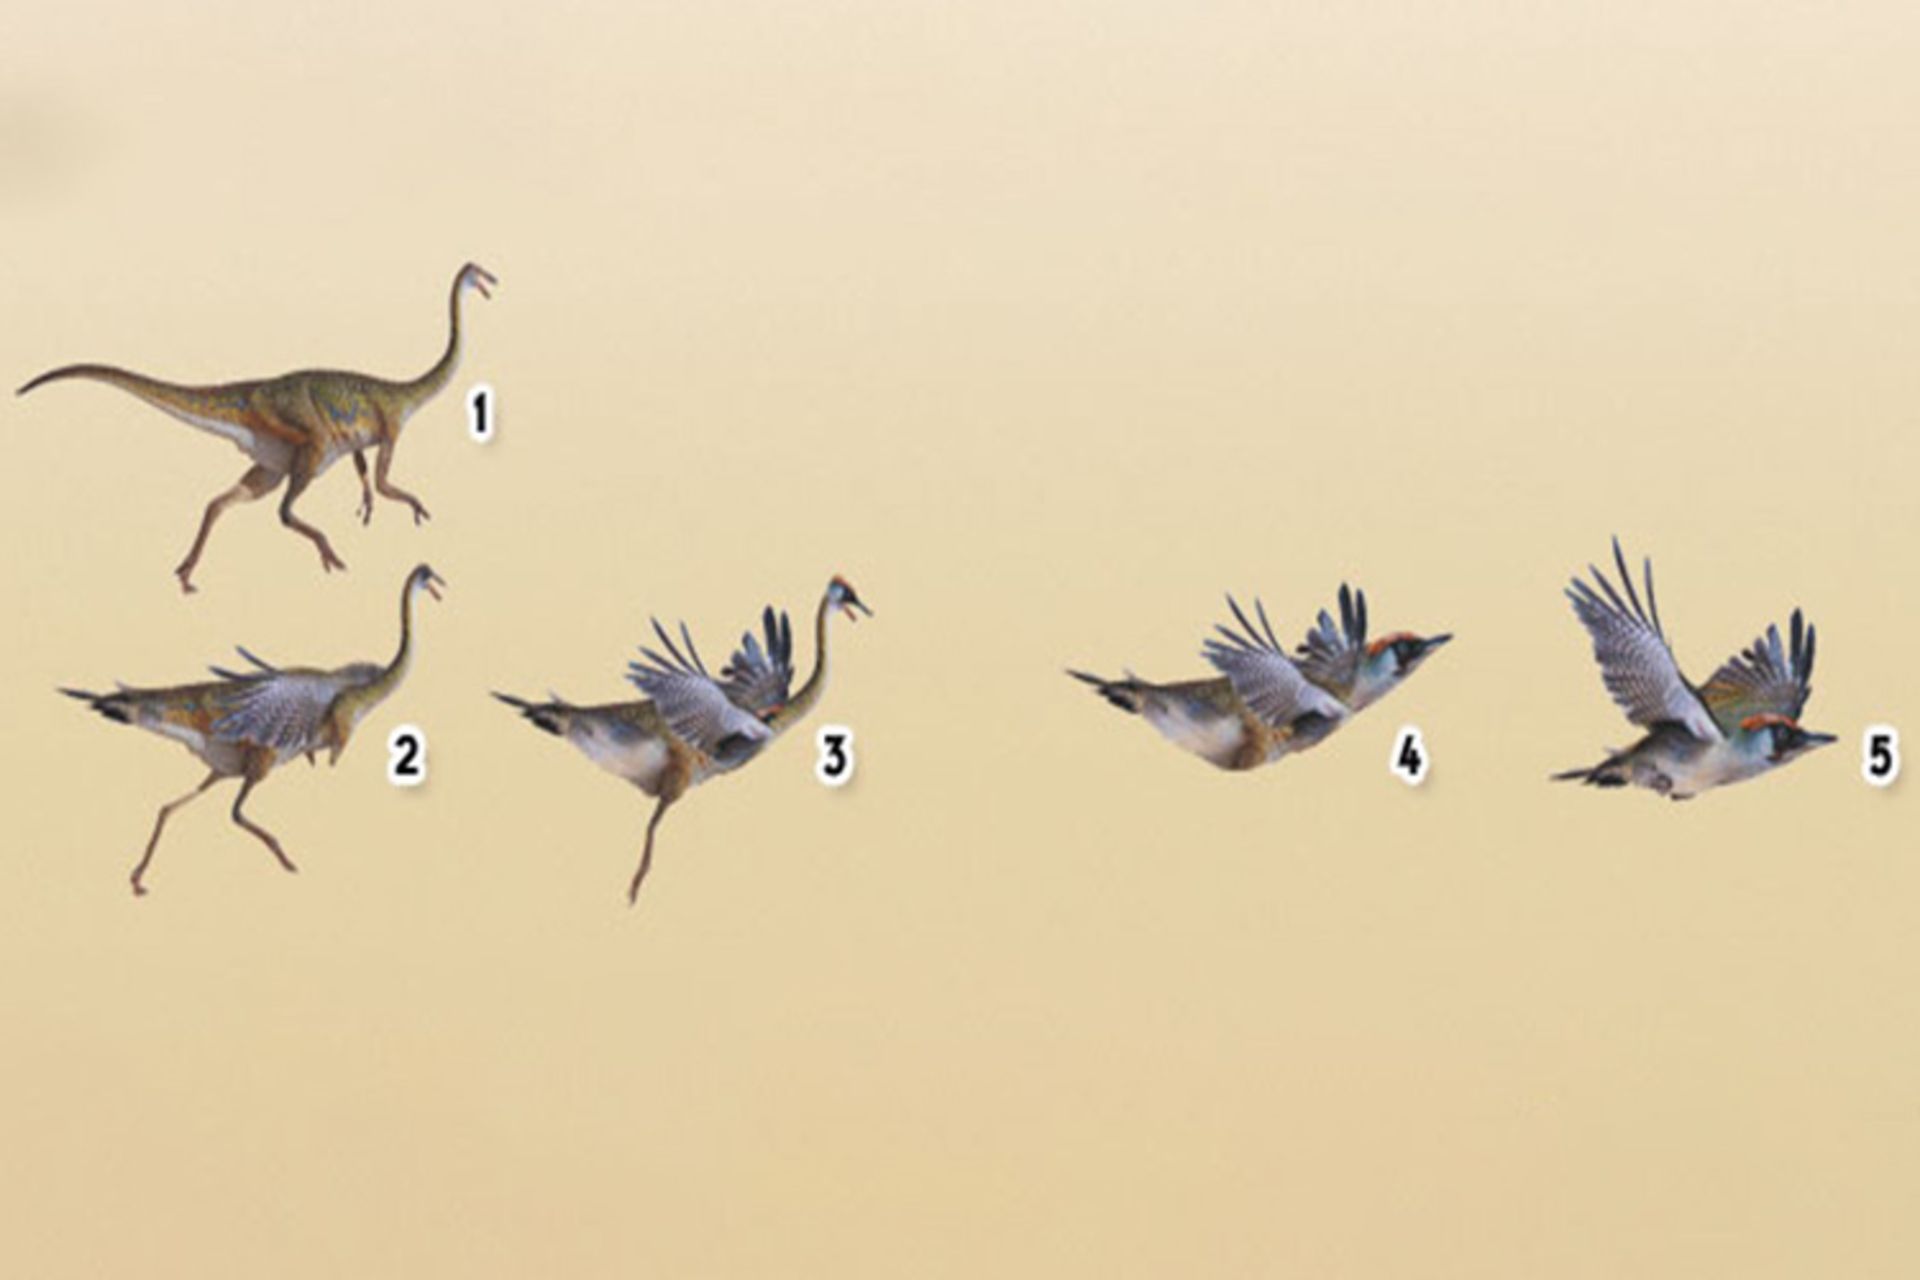 مرجع متخصصين ايران تكامل پرندگان / birds evolution